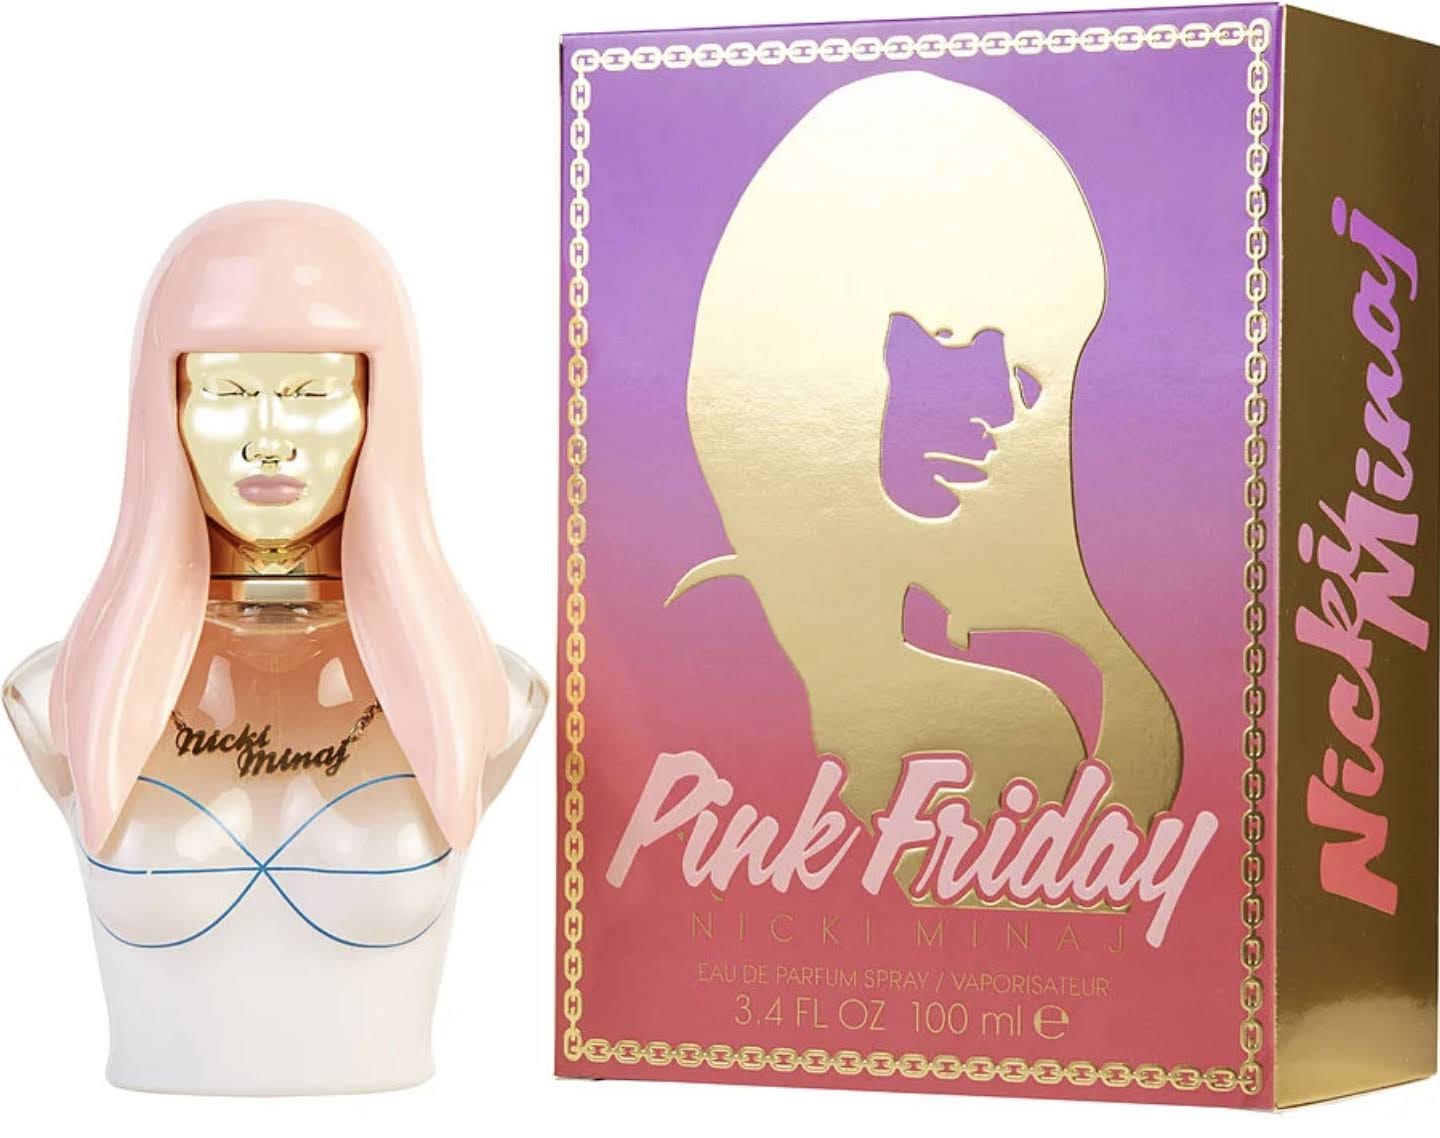 Nicki Minaj's Pink Friday Women's Perfume | Image